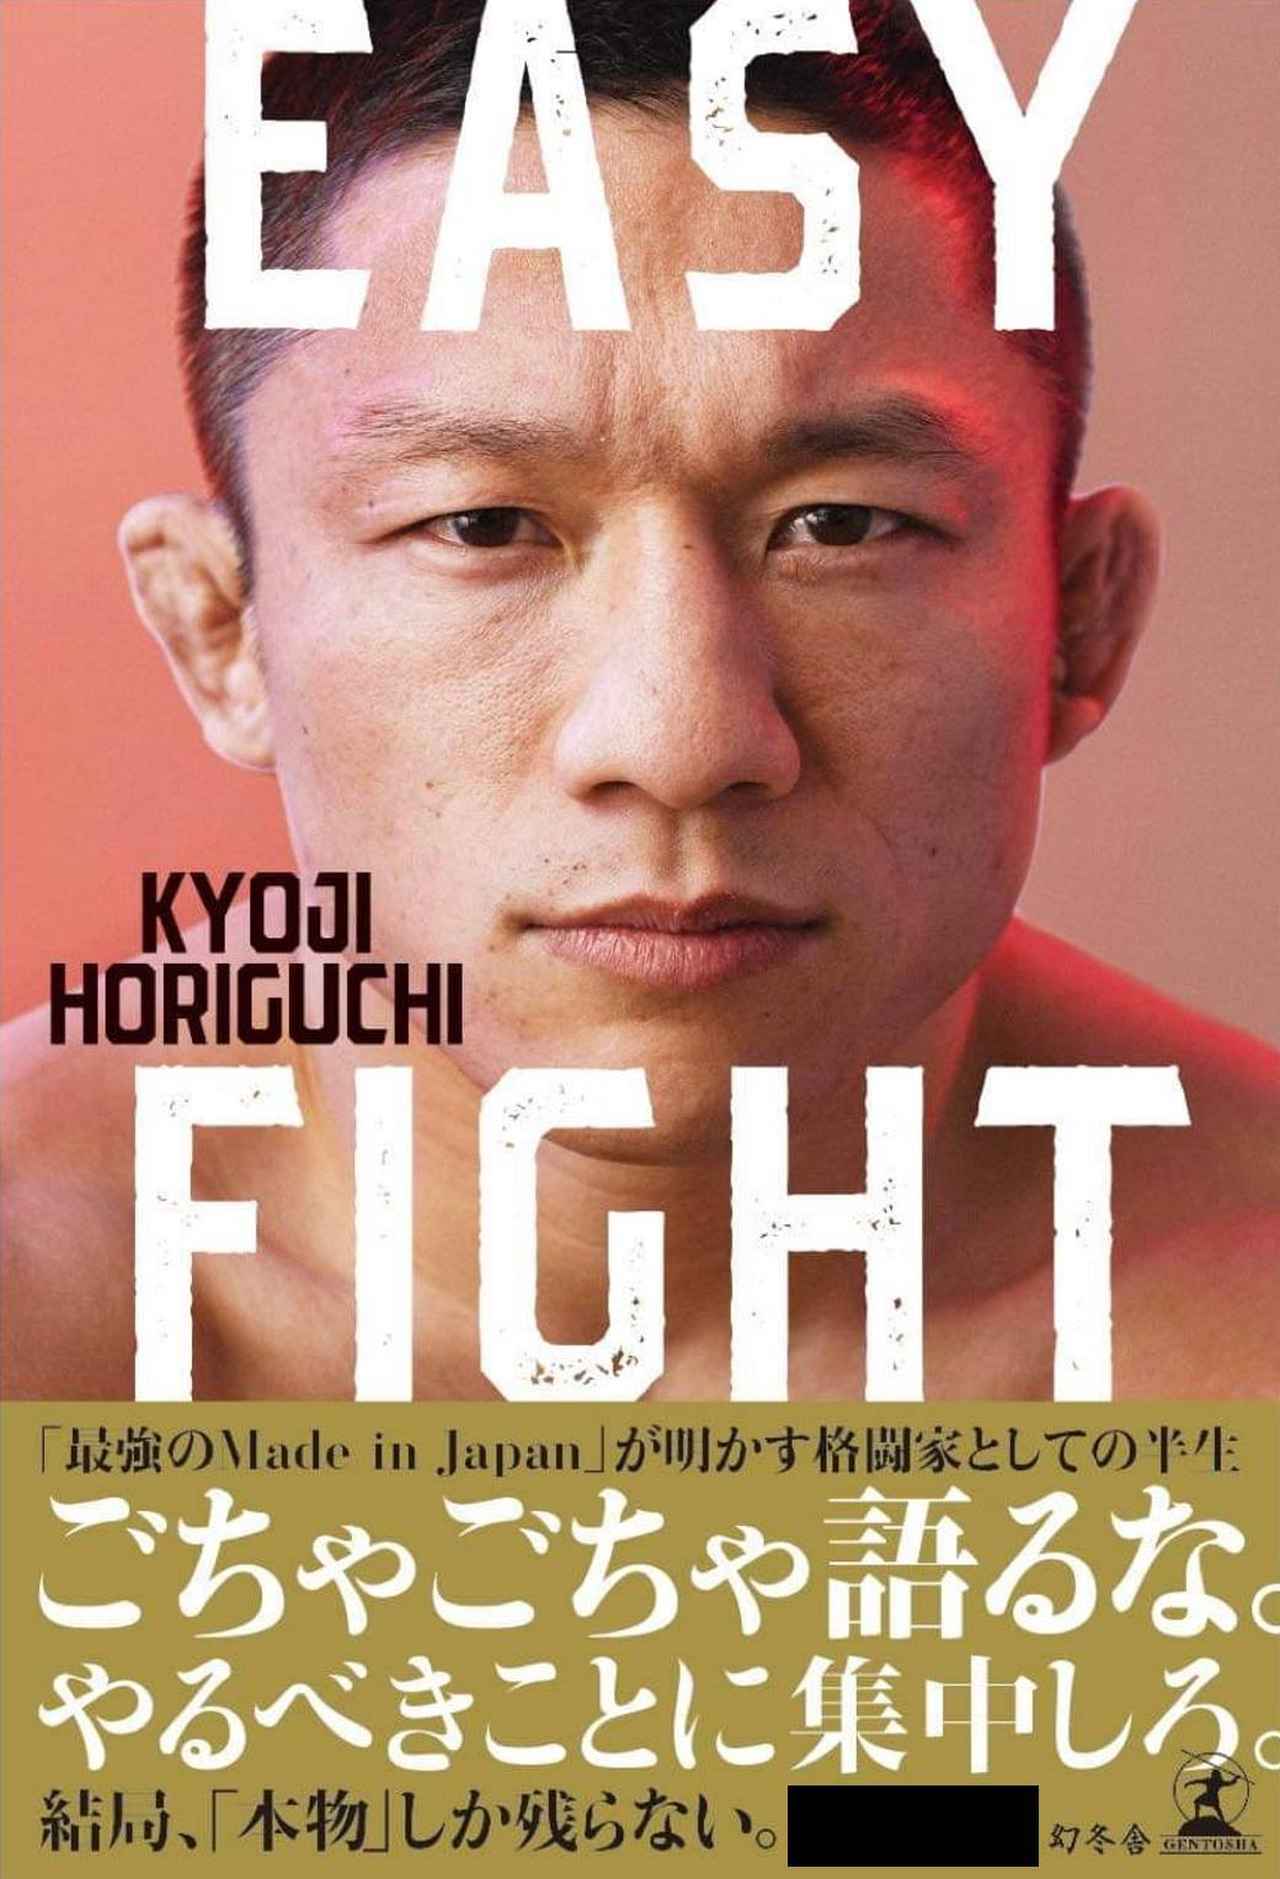 堀口恭司の半生をまとめた書籍『EASY FIGHT』